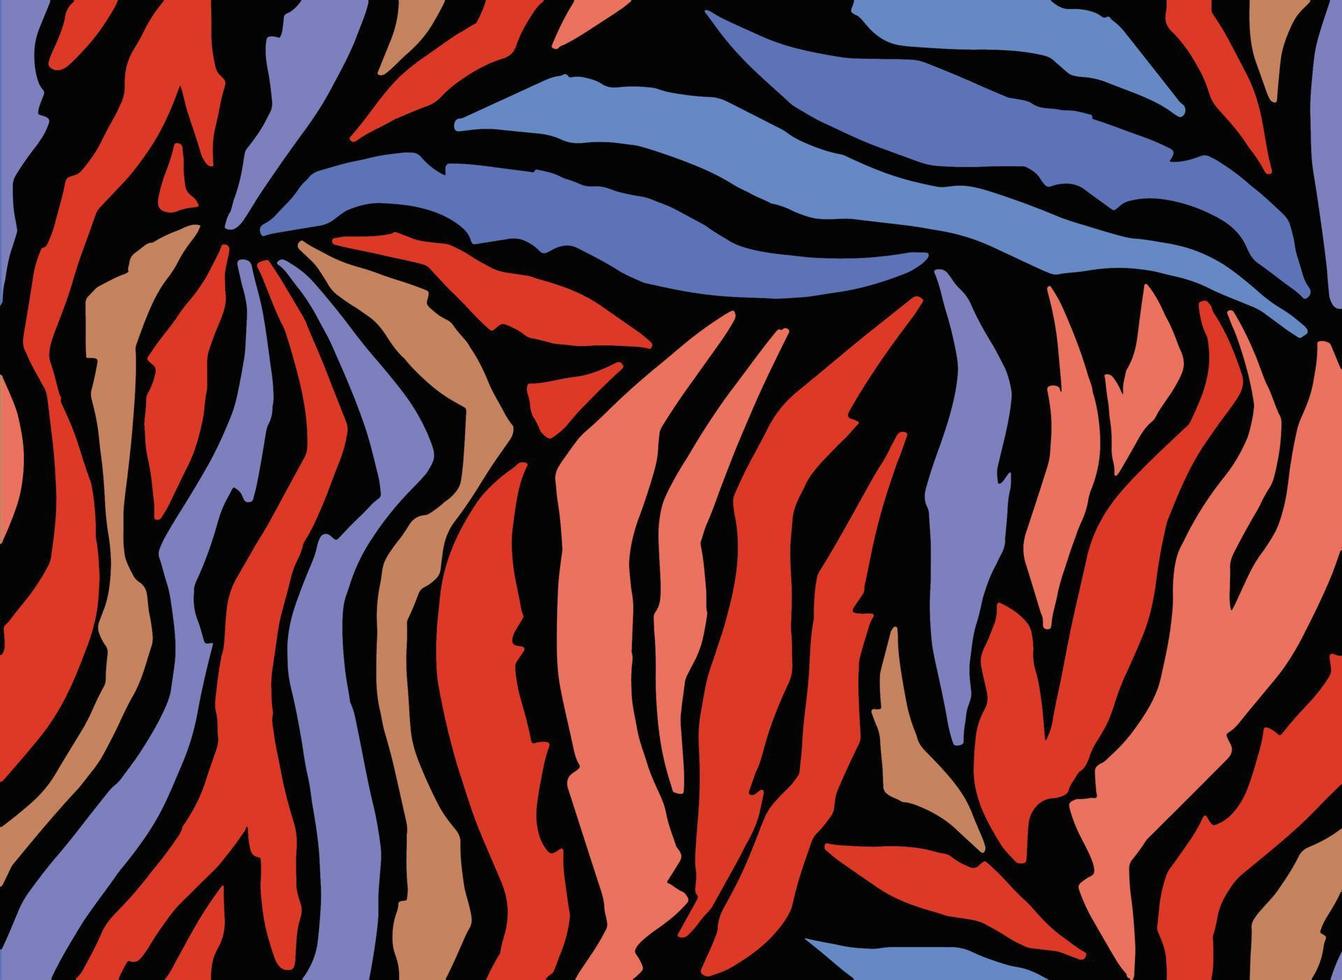 mycket färgrik abstrakt zebra hud mönster.perfekt för affischer, muggar, kort och Mer. vektor illustration